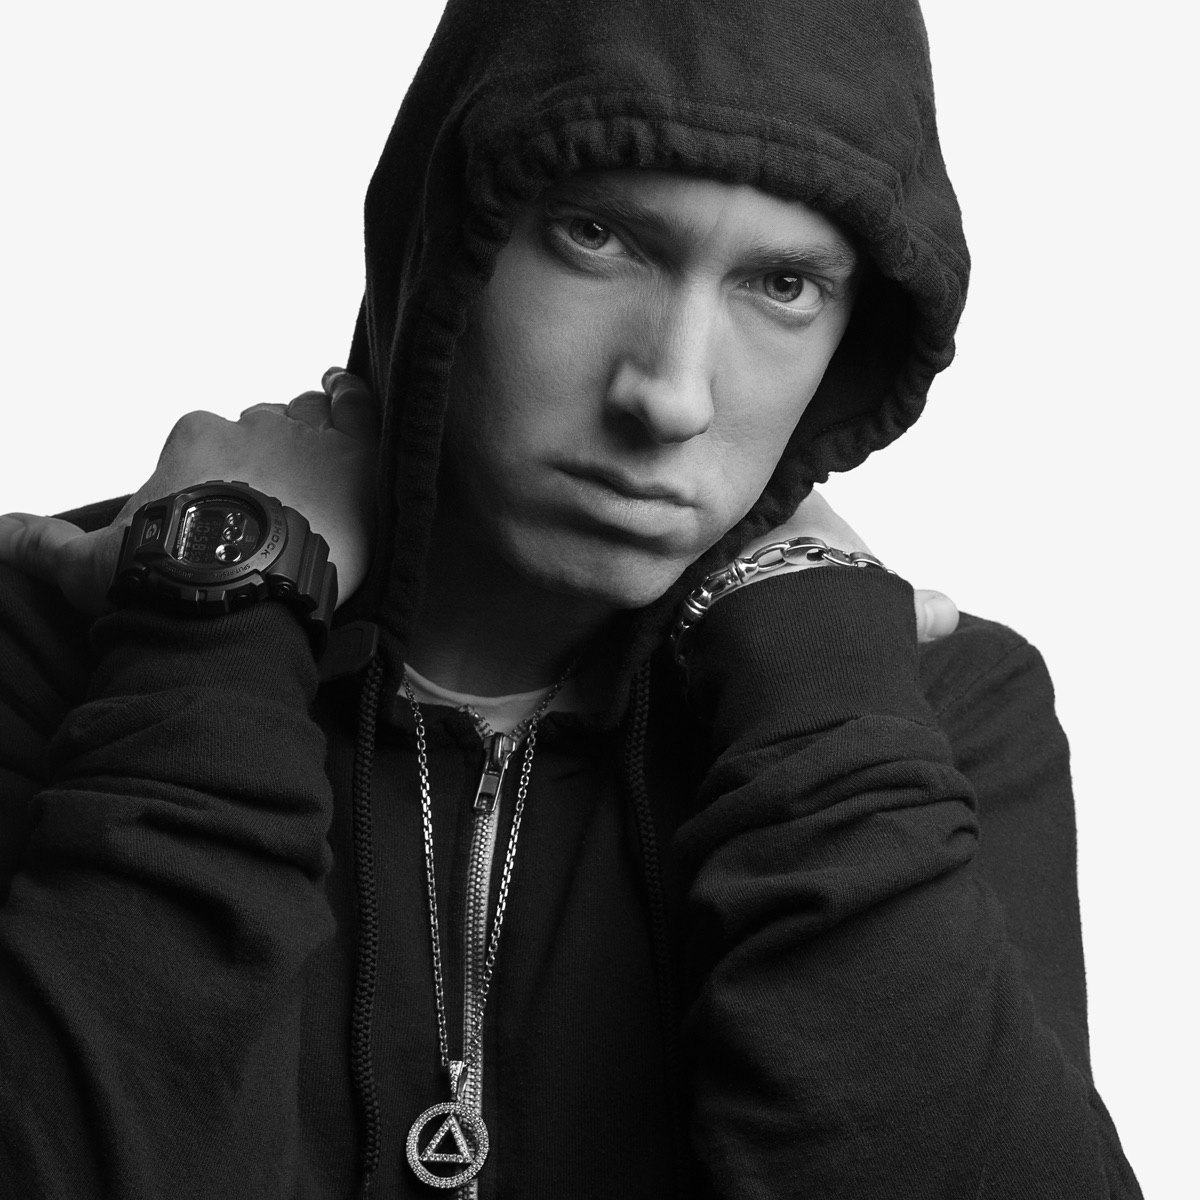 Eminem on iTunes